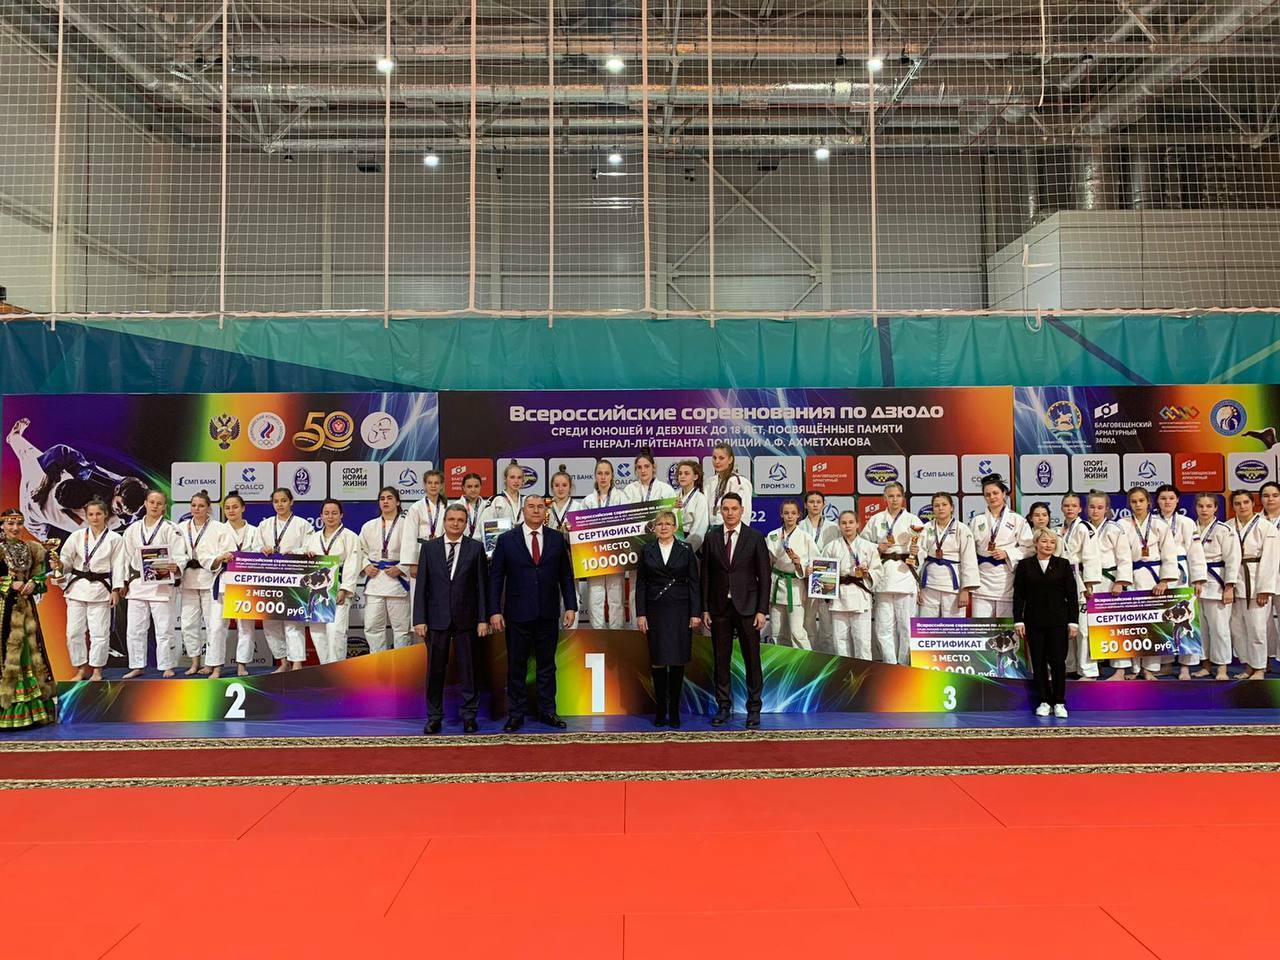 В Башкирии открылся всероссийский турнир по дзюдо памяти генерала Ахметханова